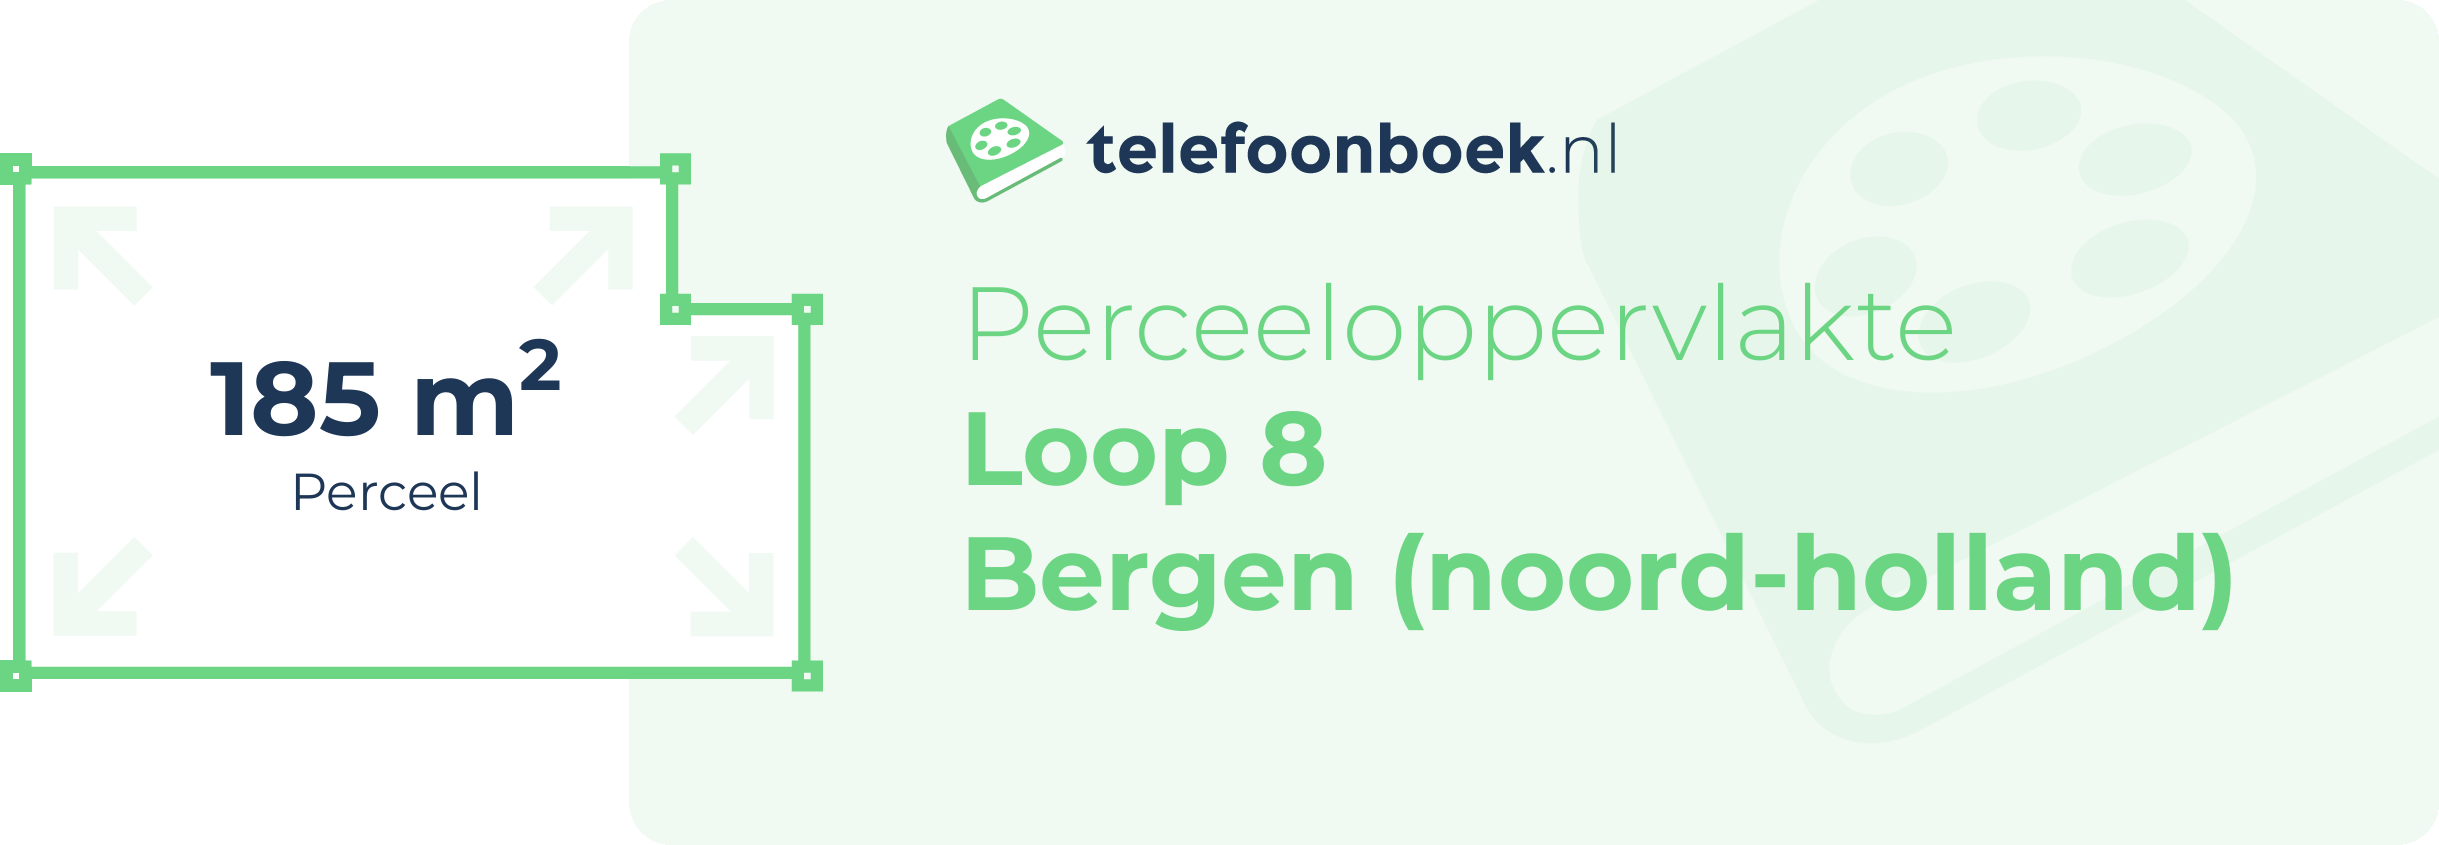 Perceeloppervlakte Loop 8 Bergen (Noord-Holland)